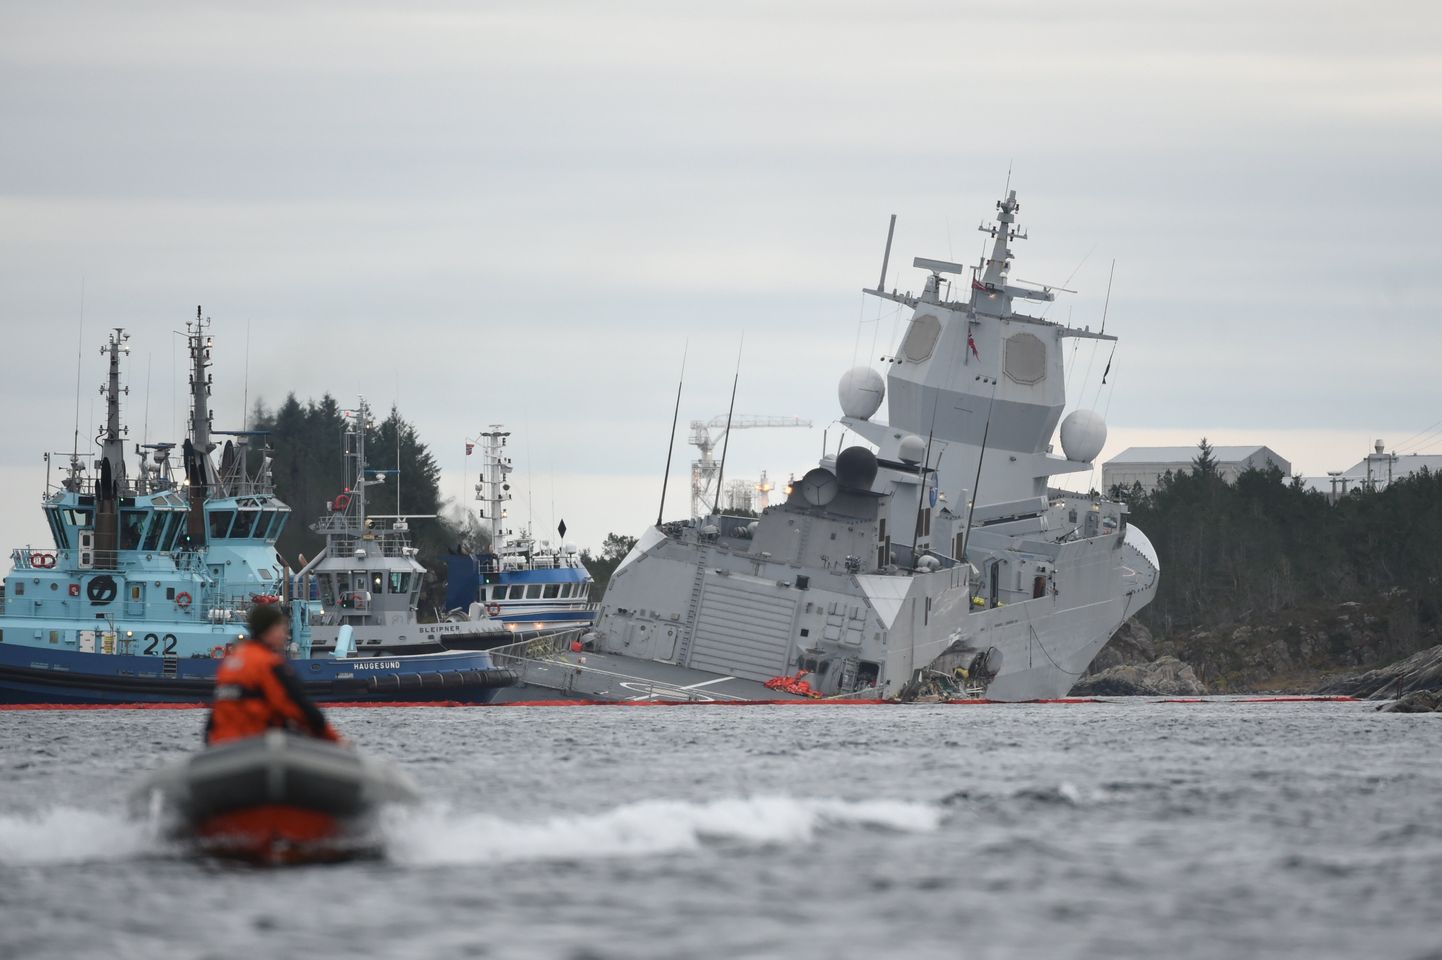 Norra fregatt KNM Helge Ingstad on pärast Malta tankeri otsasõitu Sture lähedal uppumisohus